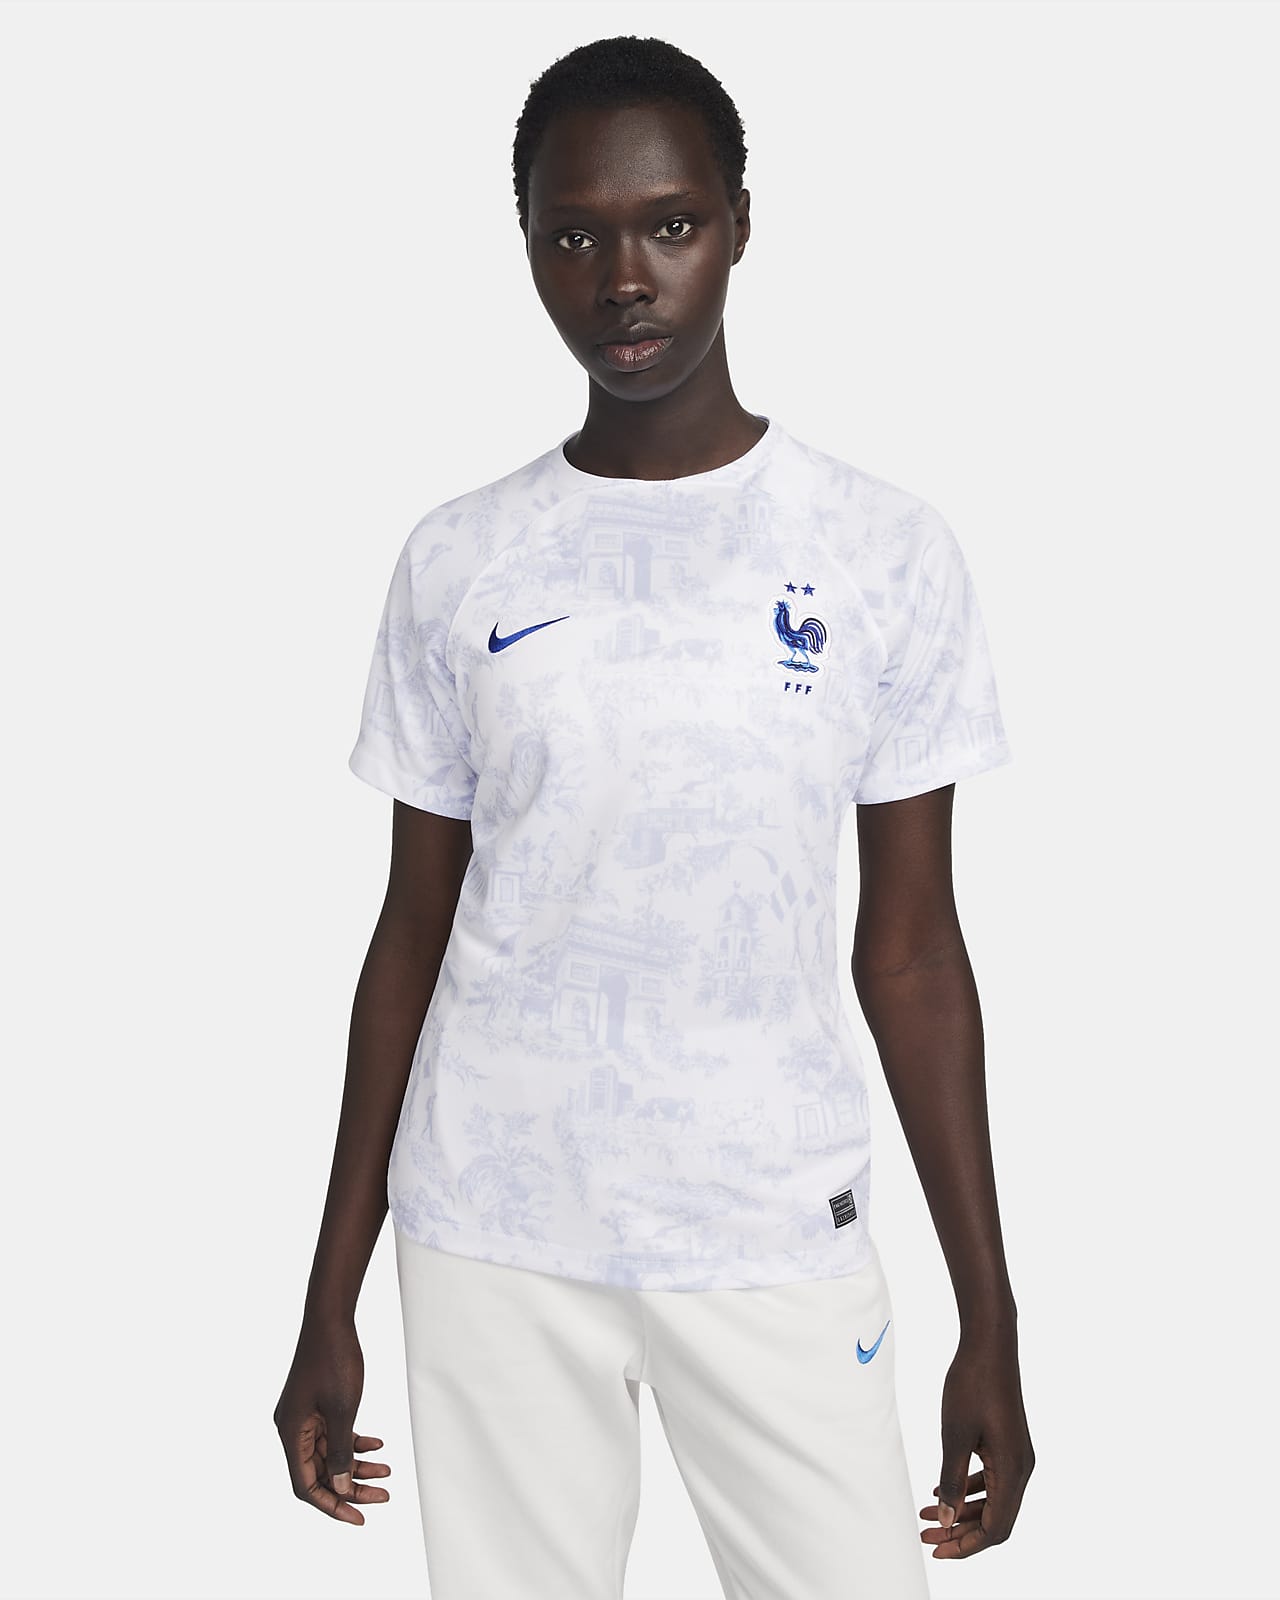 FFF 2022/23 Stadium Away Women's Nike Dri-FIT Football Shirt